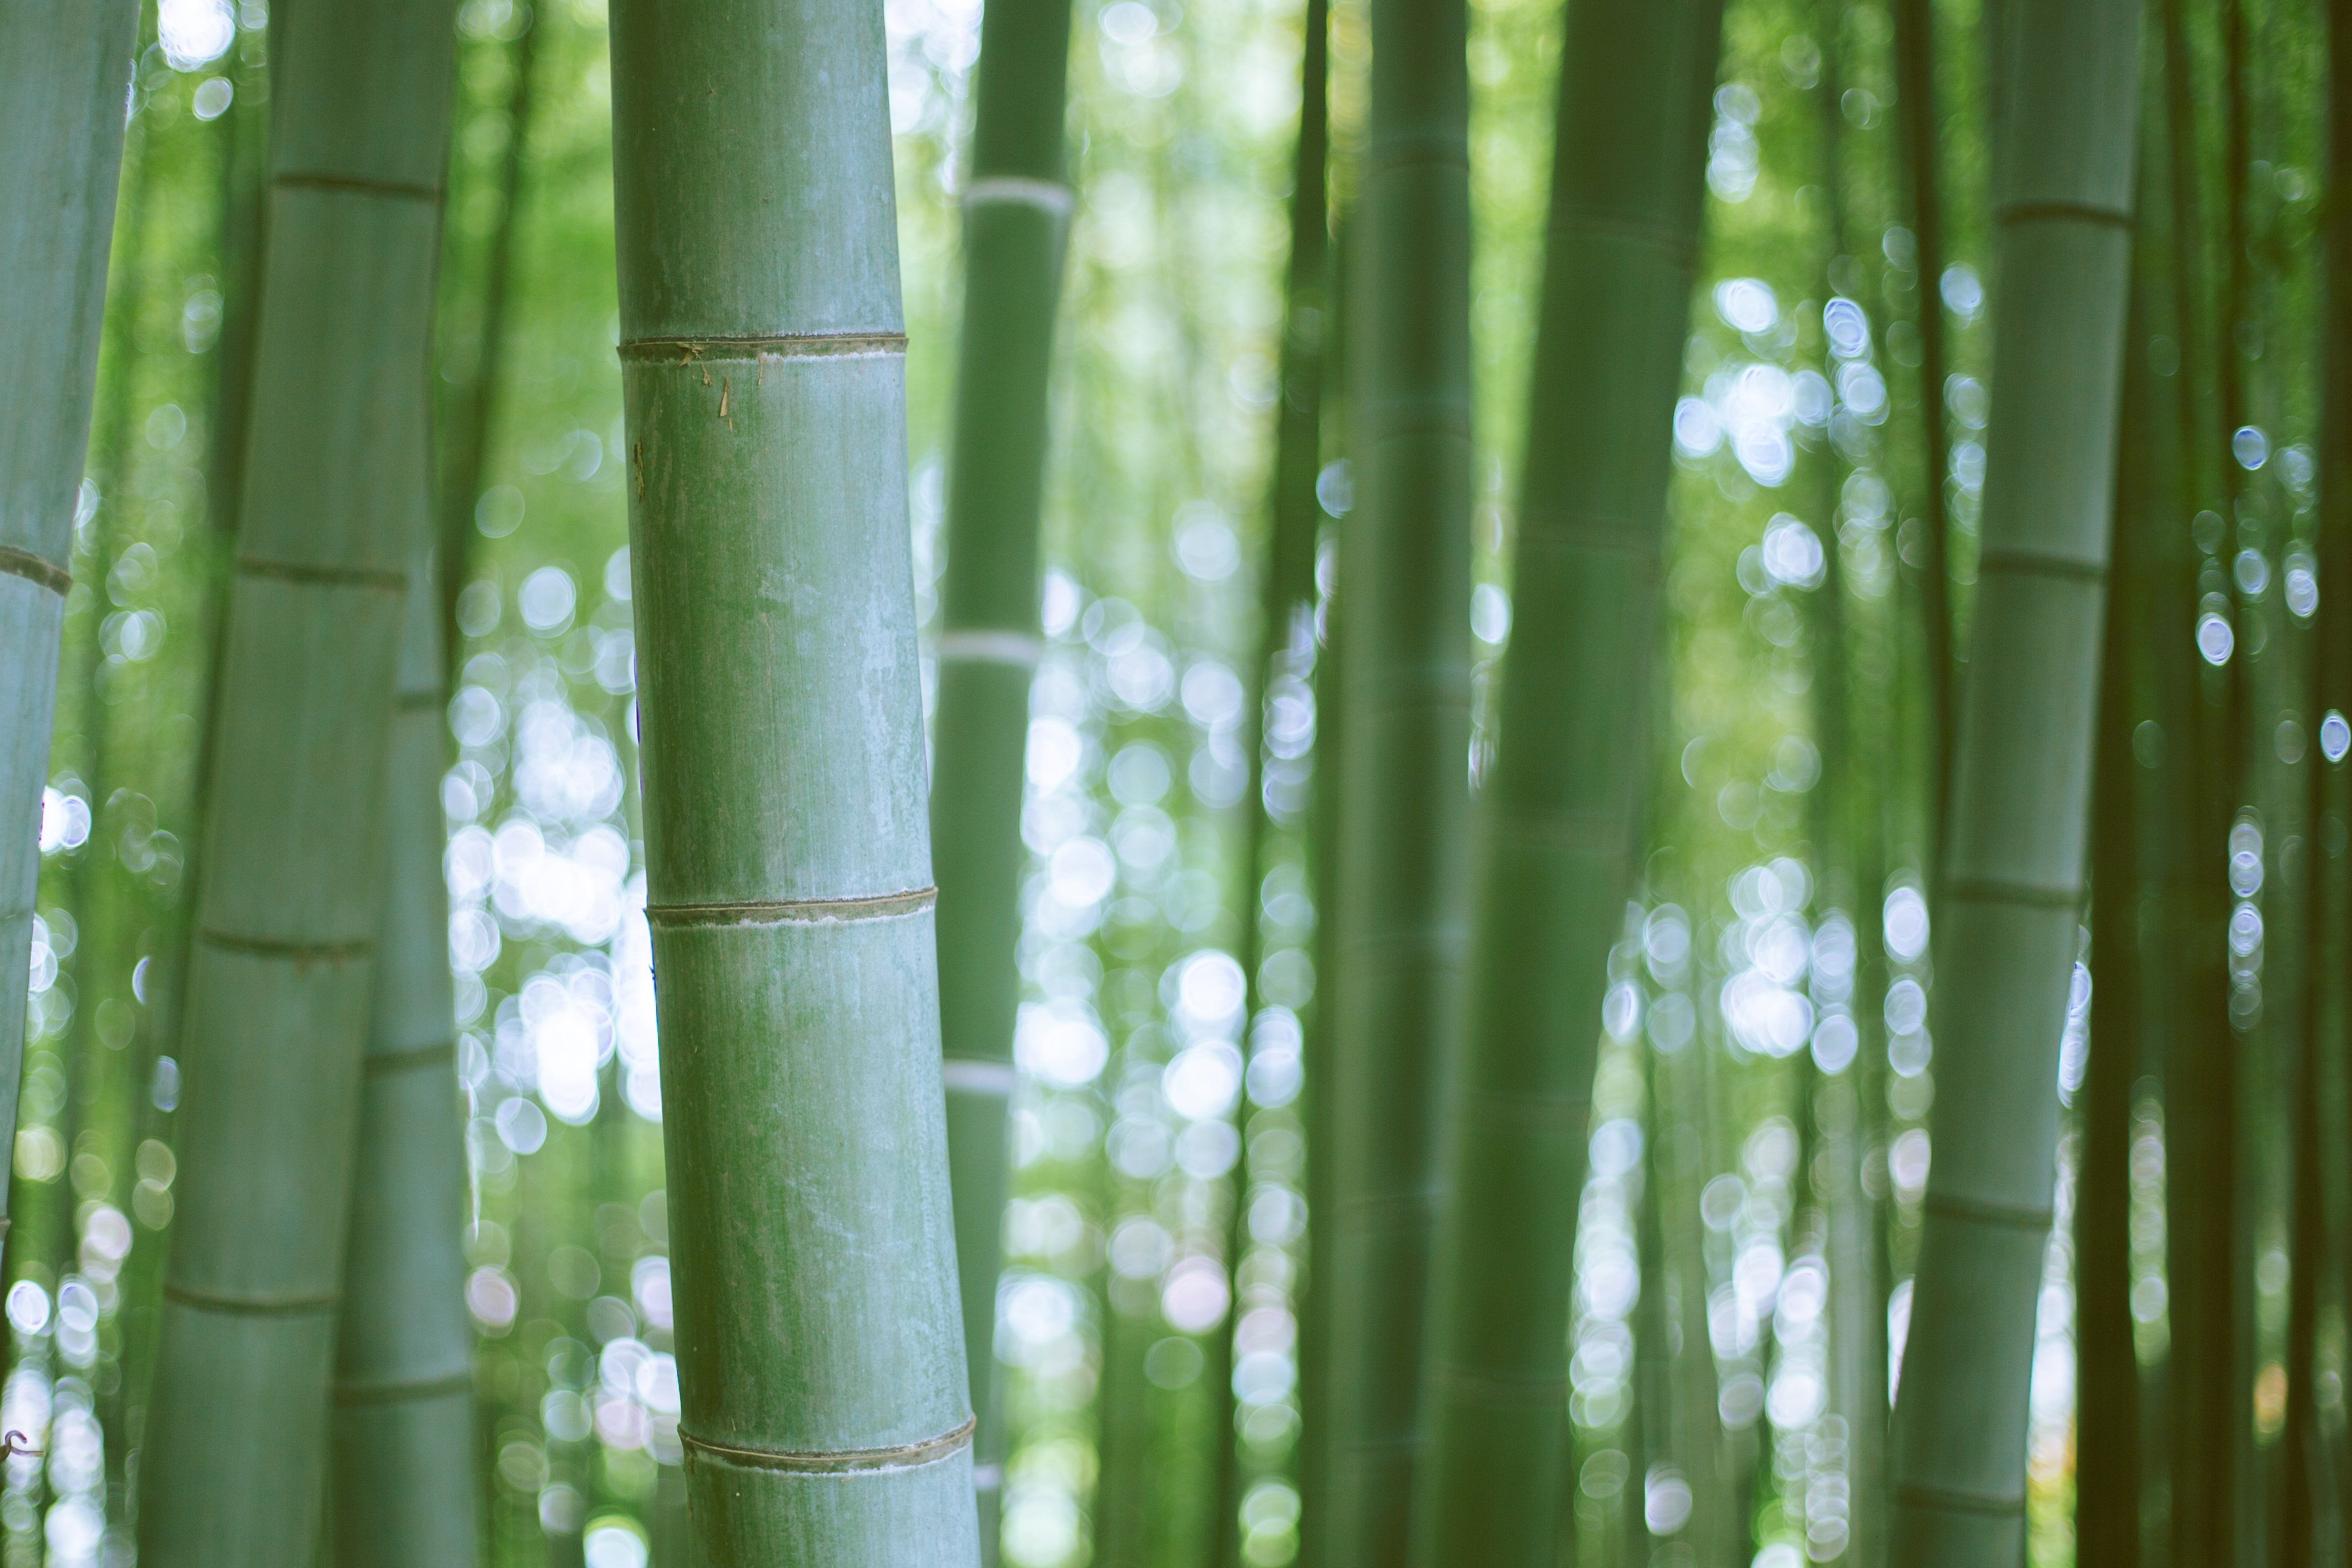 Coltivare bambù gigante in Italia: tra sostenibilità e redditività